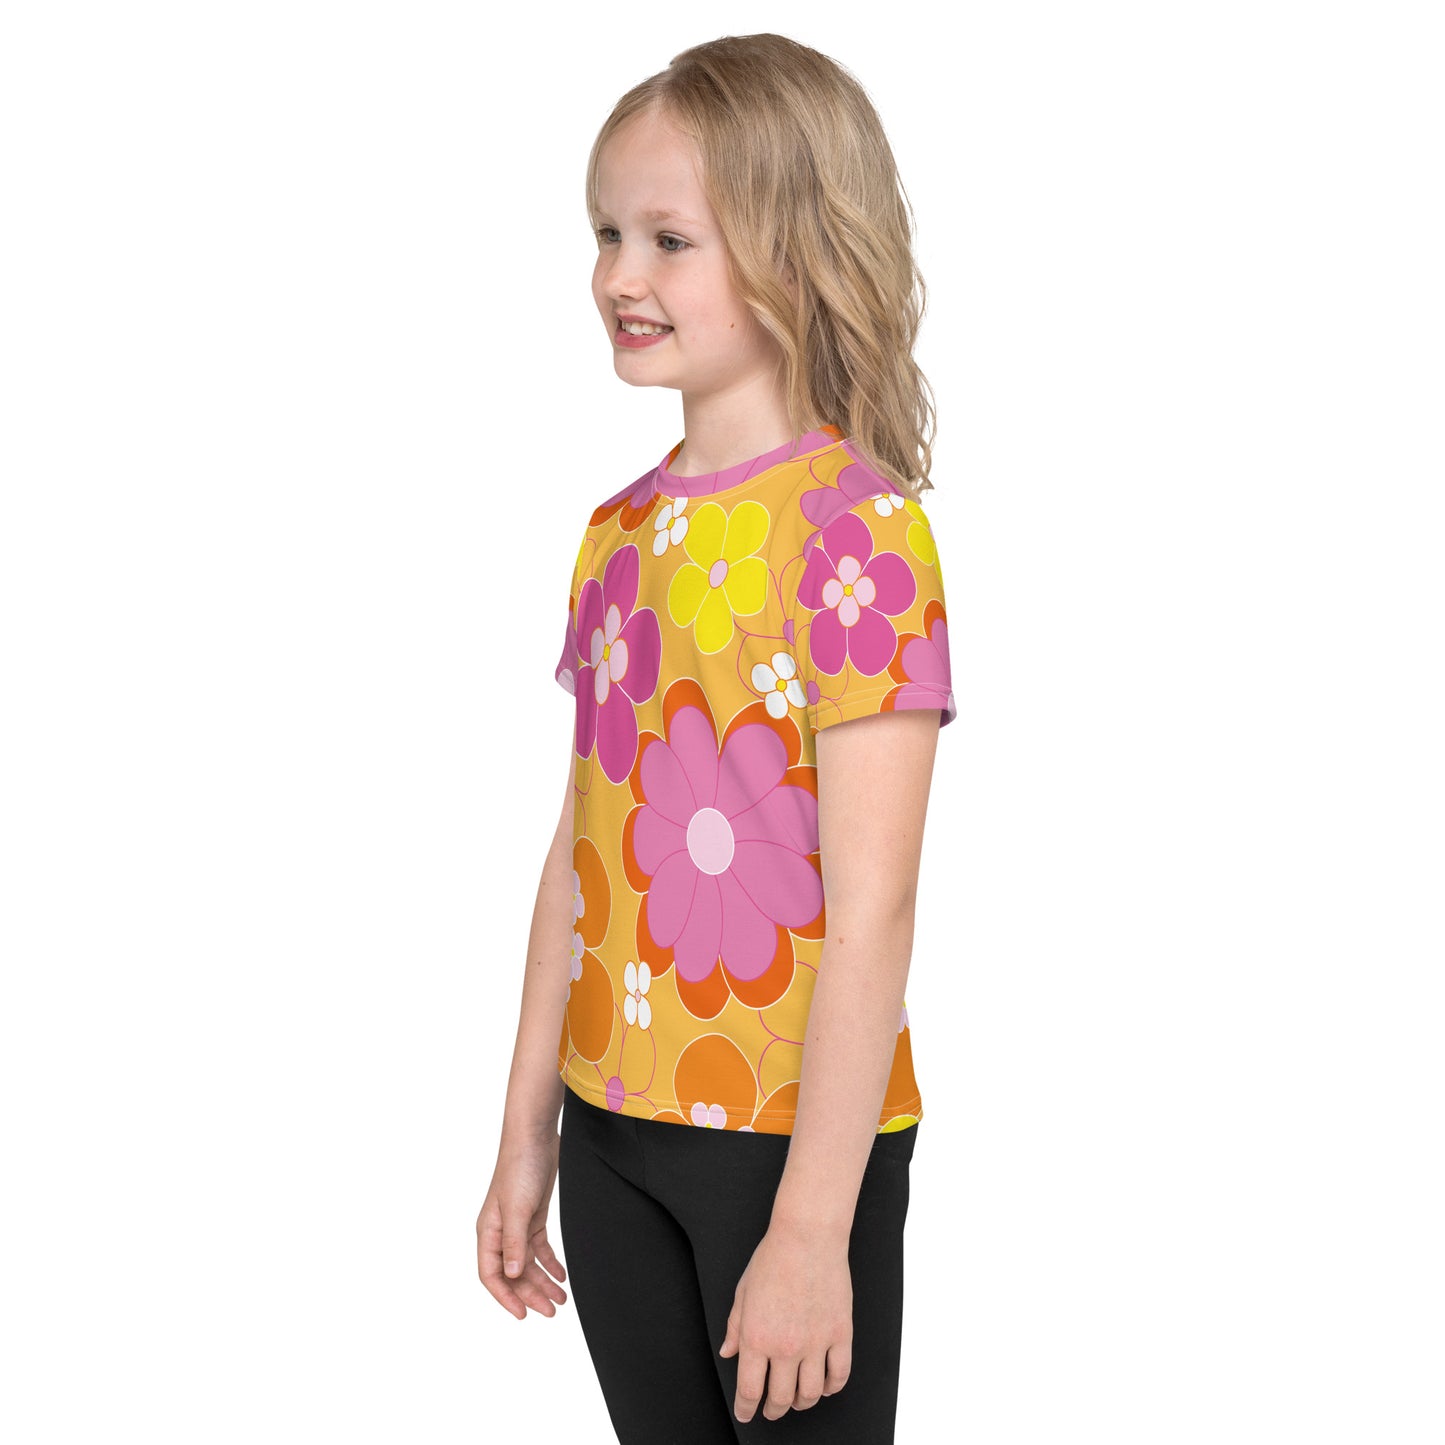 "Flower" patterned children's t-shirt